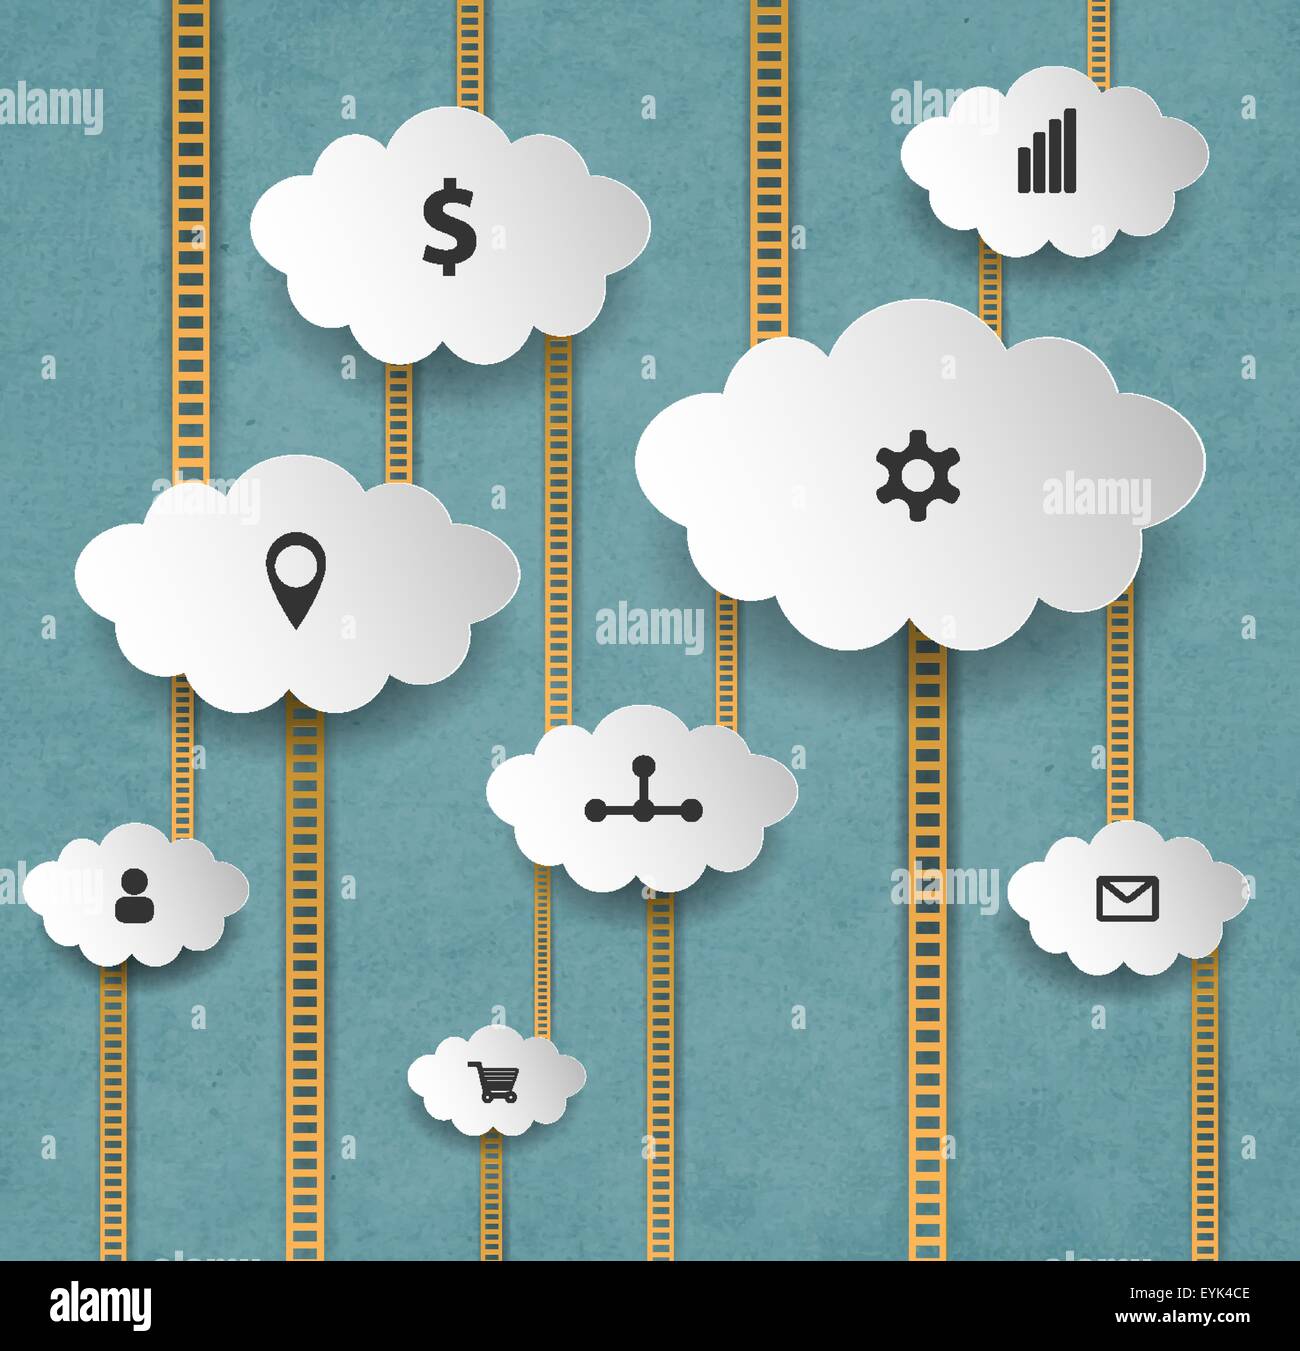 Résumé Arrière-plan de marketing Internet avec les nuages et les escaliers Illustration de Vecteur